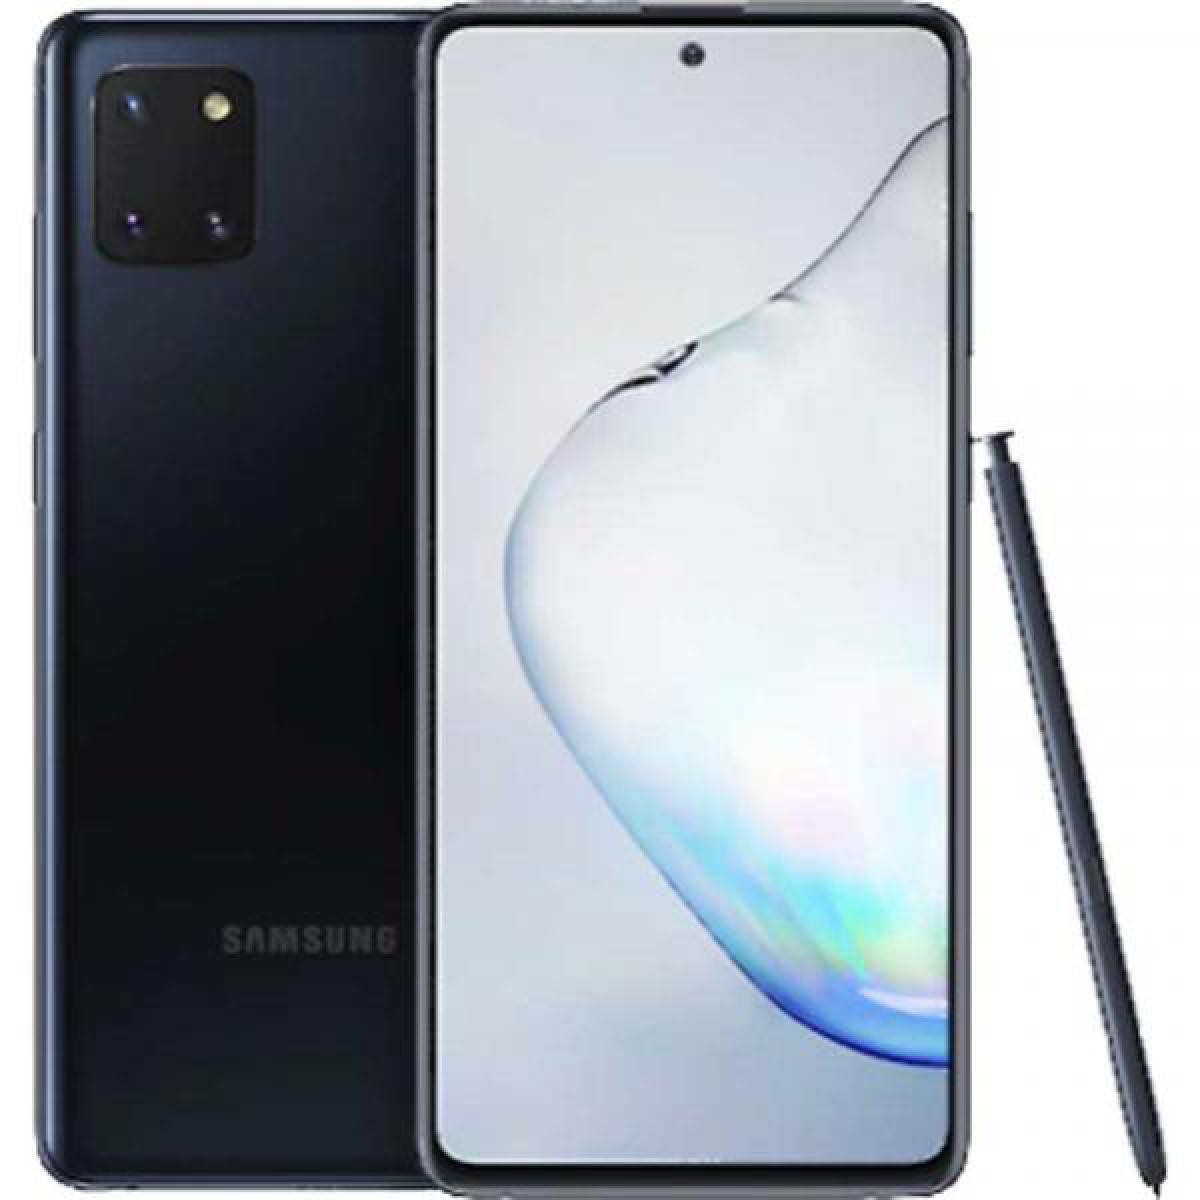 Samsung - Samsung N770 Galaxy Note 10 Lt 6GB RAM 128GB Dual-SIM aura black EU - Bracelet connecté